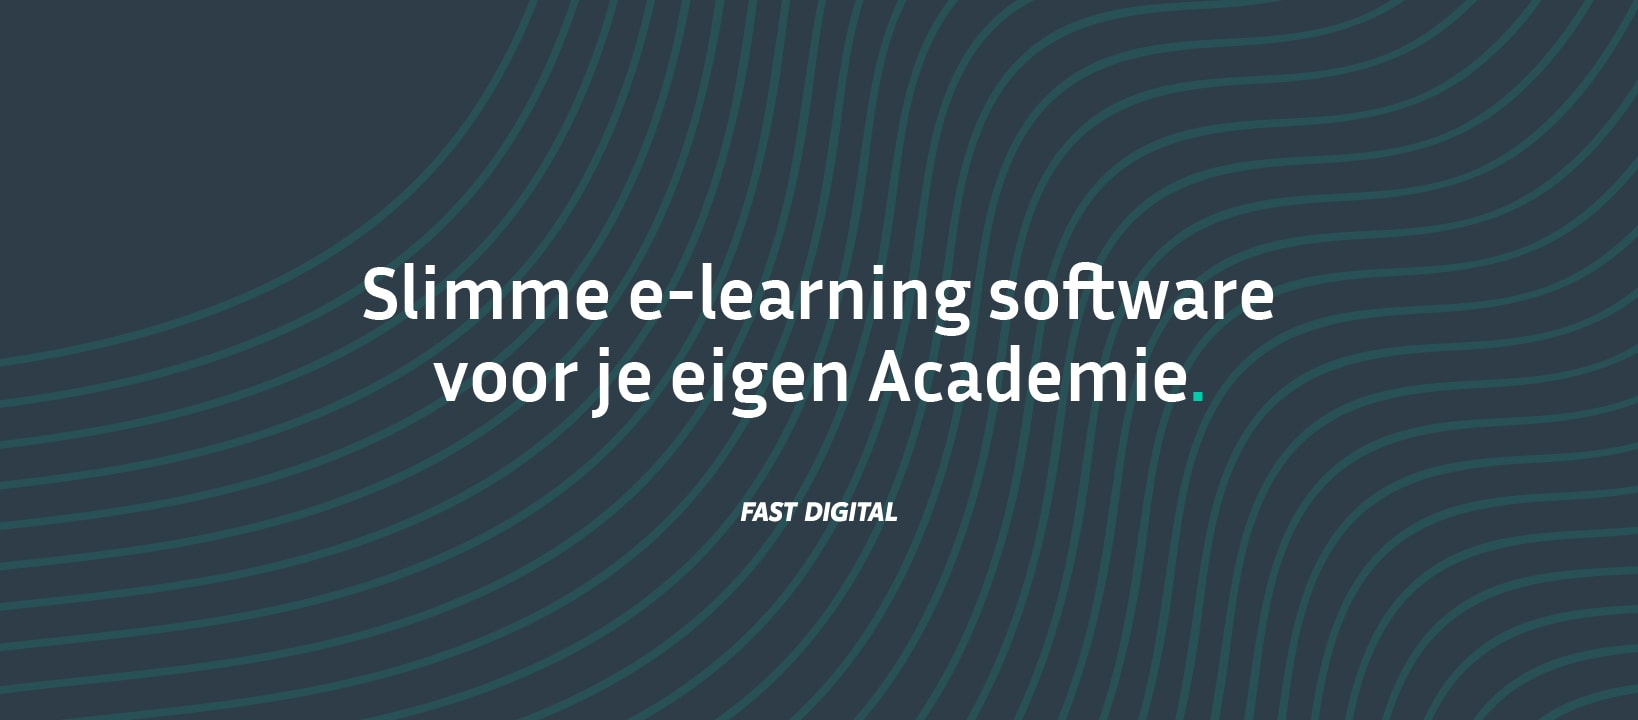 Nieuw merk voor E-learning software